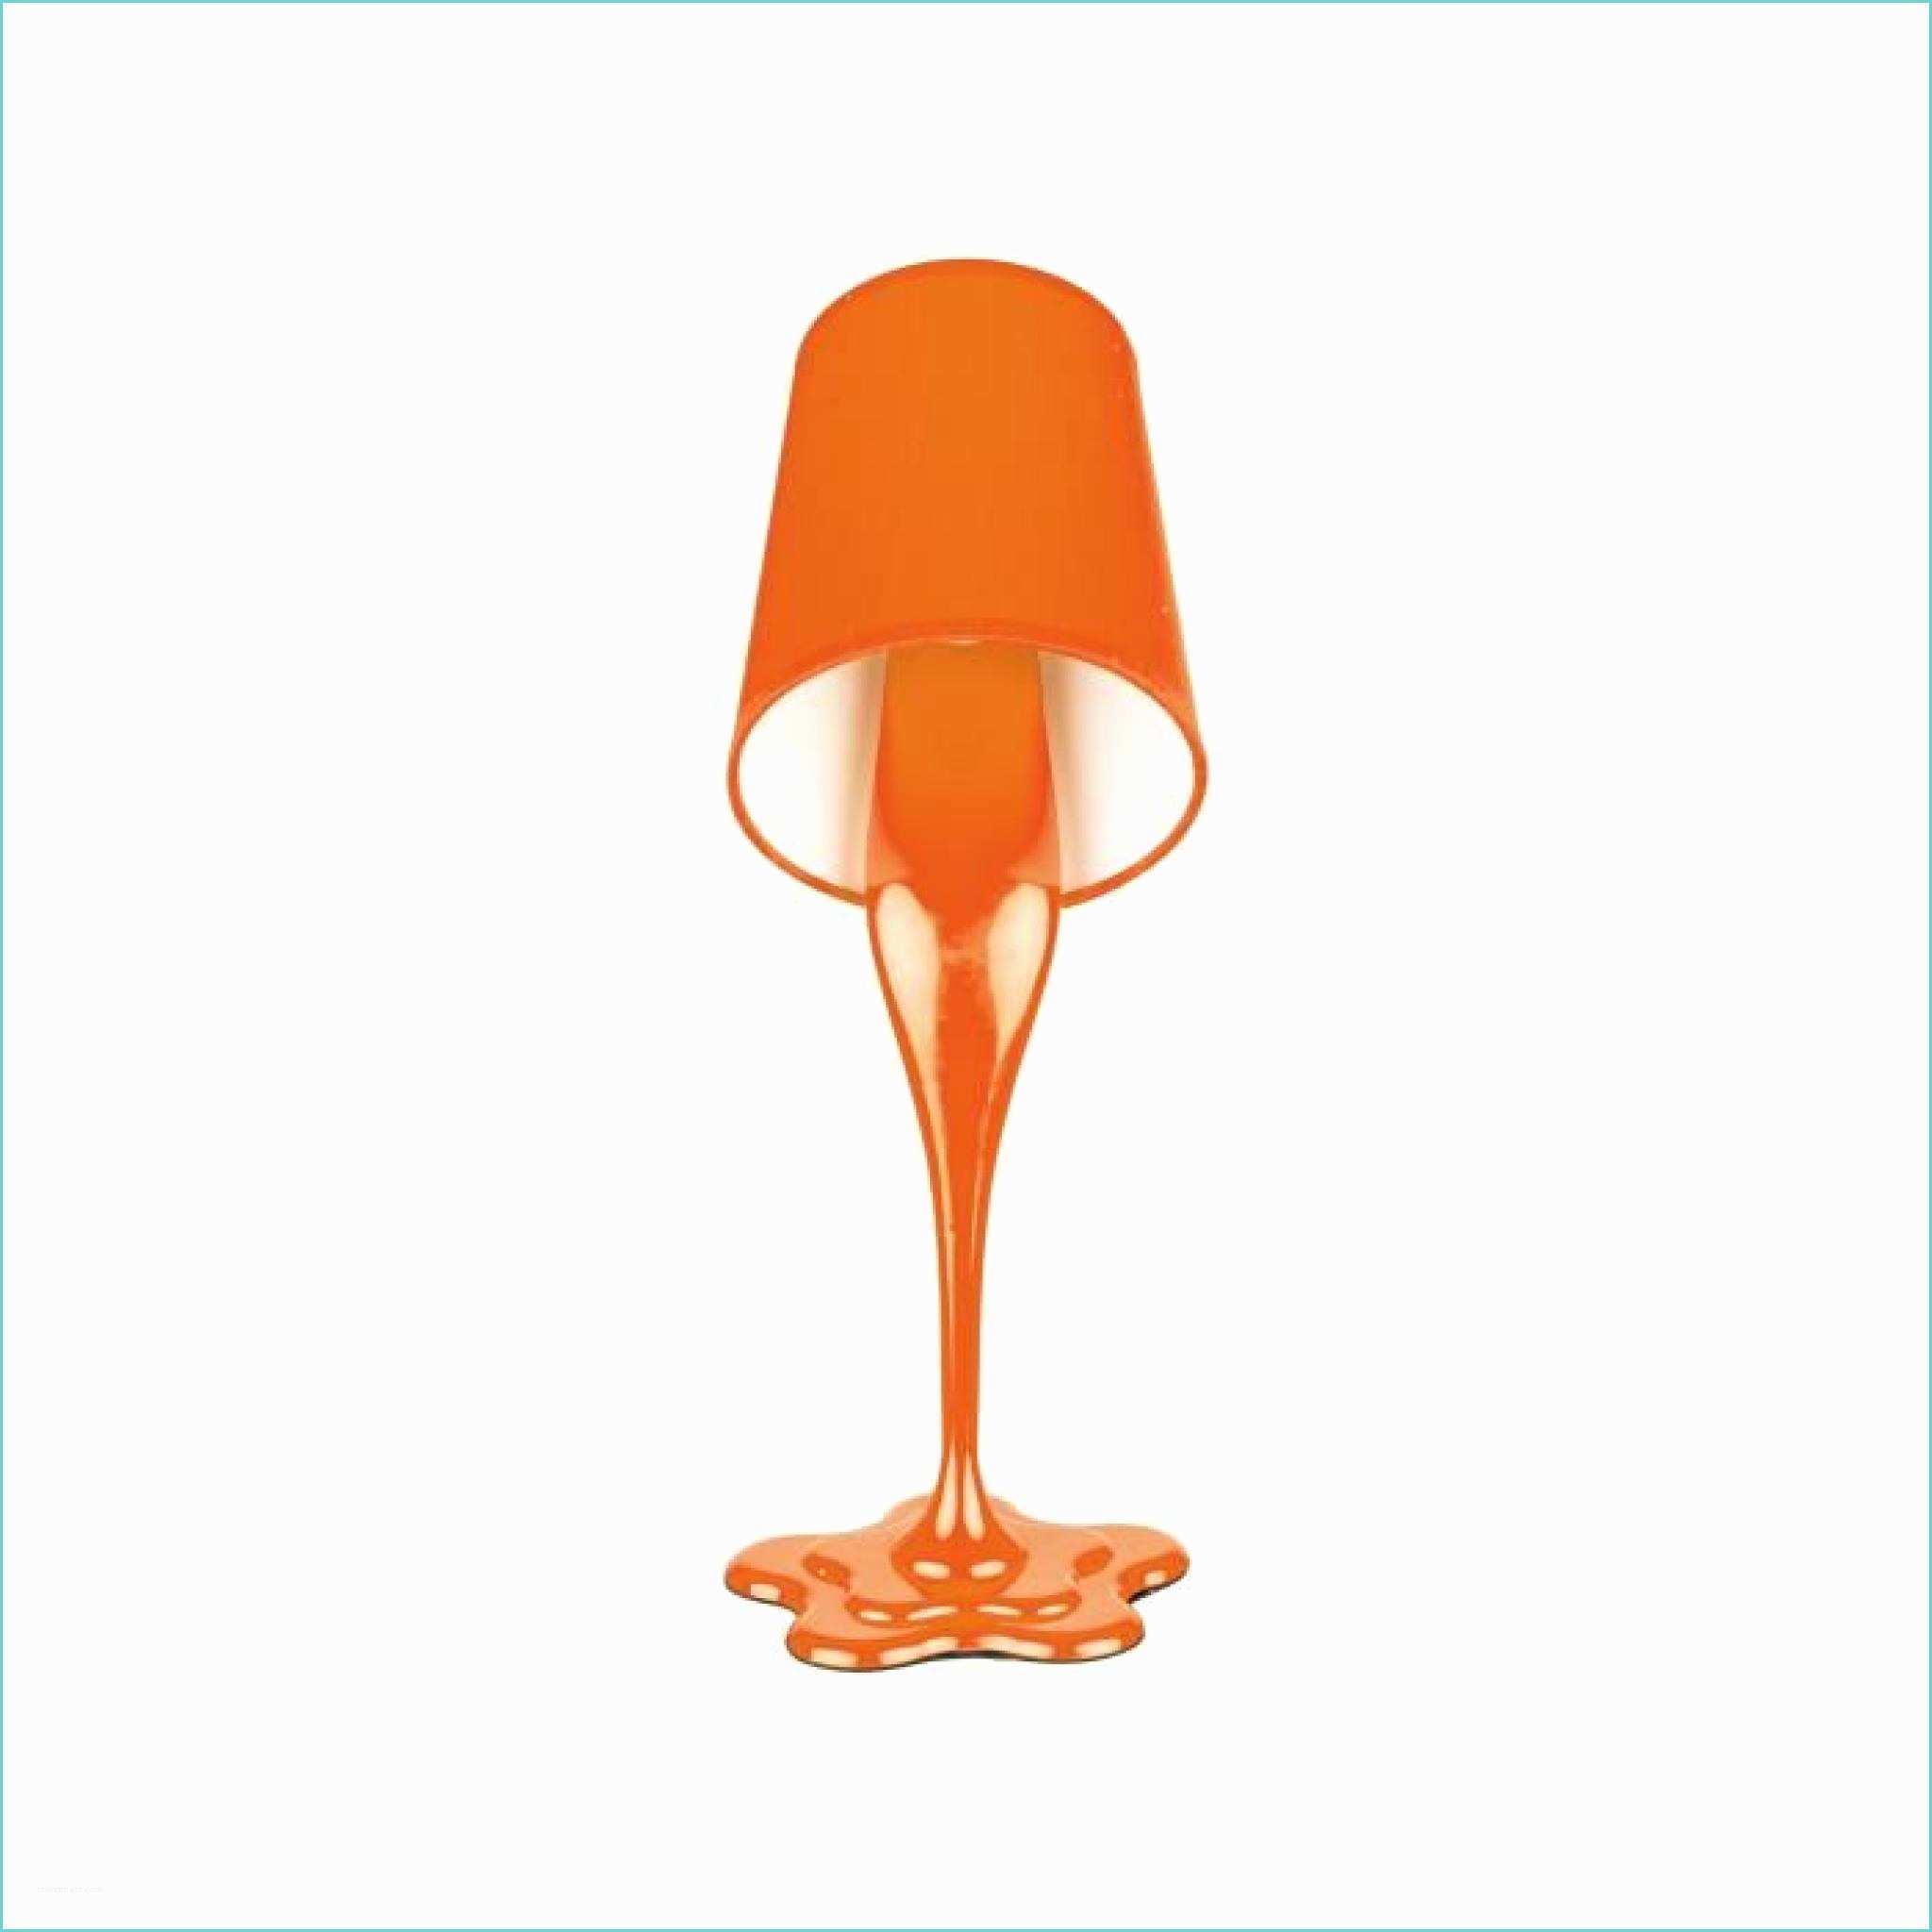 Lampe Pas Cher Lampe Pot De Peinture orange H 36 5cm Achat Vente